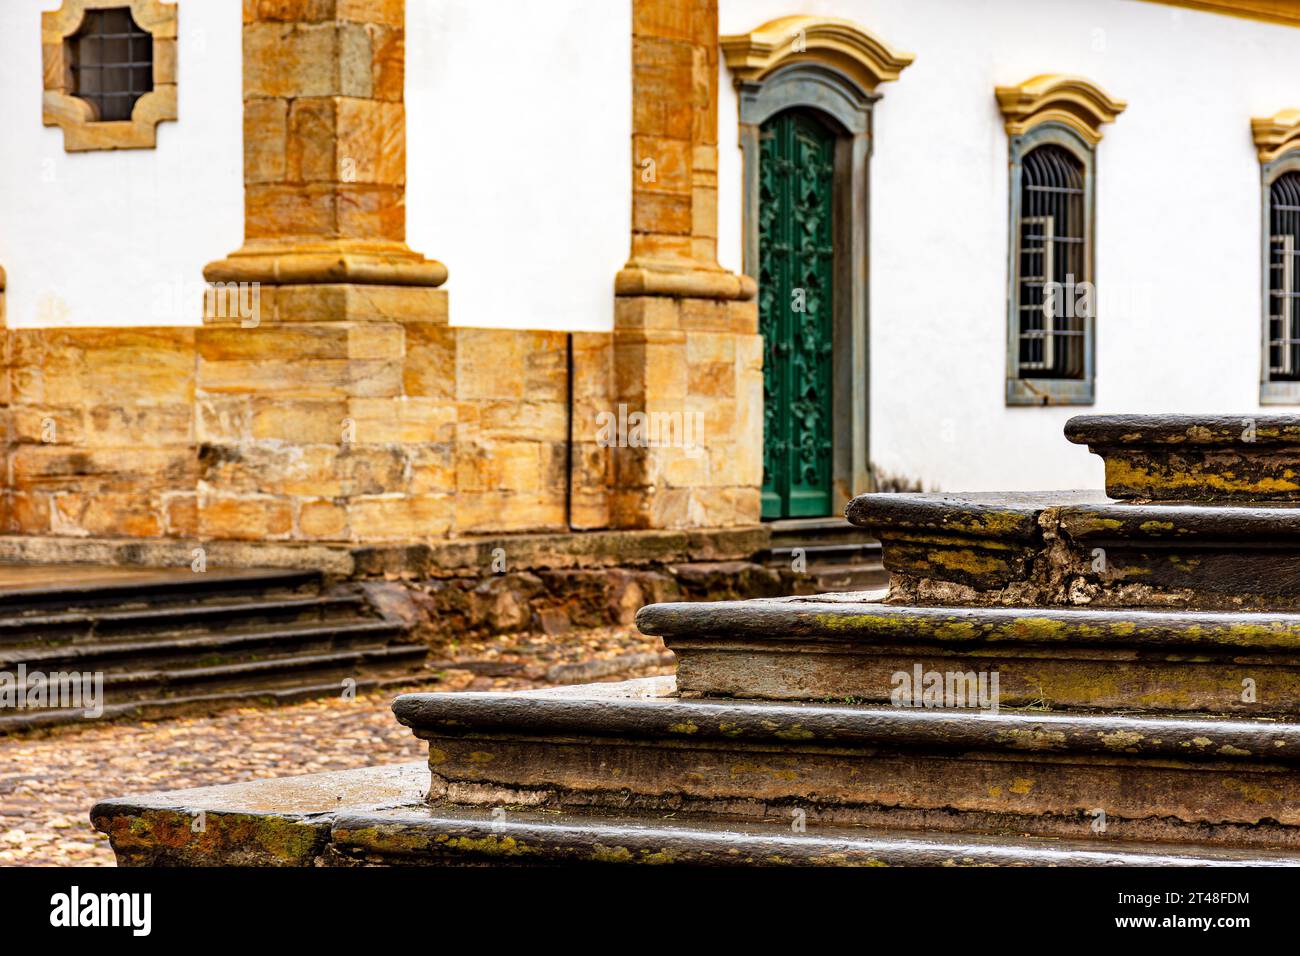 Architecture coloniale de la ville historique de Mariana dans le Minas Gerais avec détails des façades, des rues et des escaliers Banque D'Images